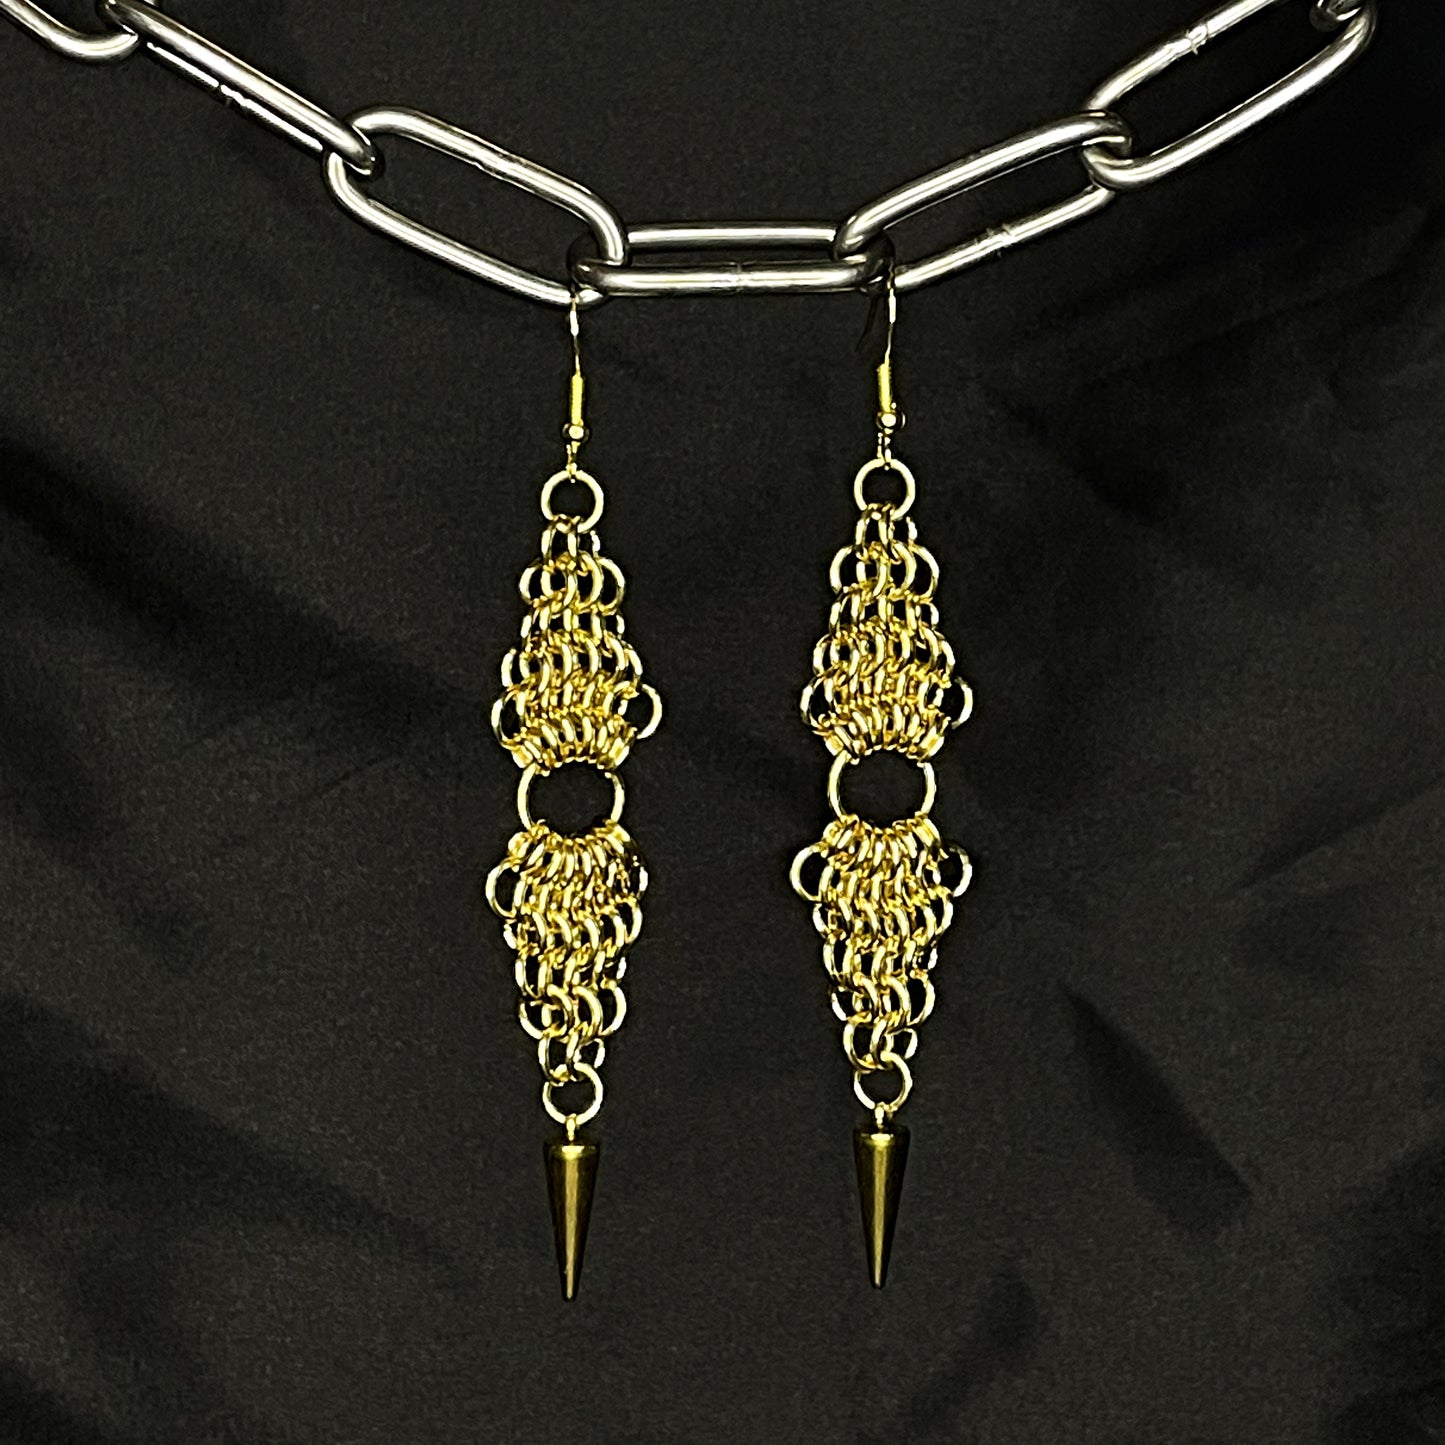 the double european spike earrings in brass